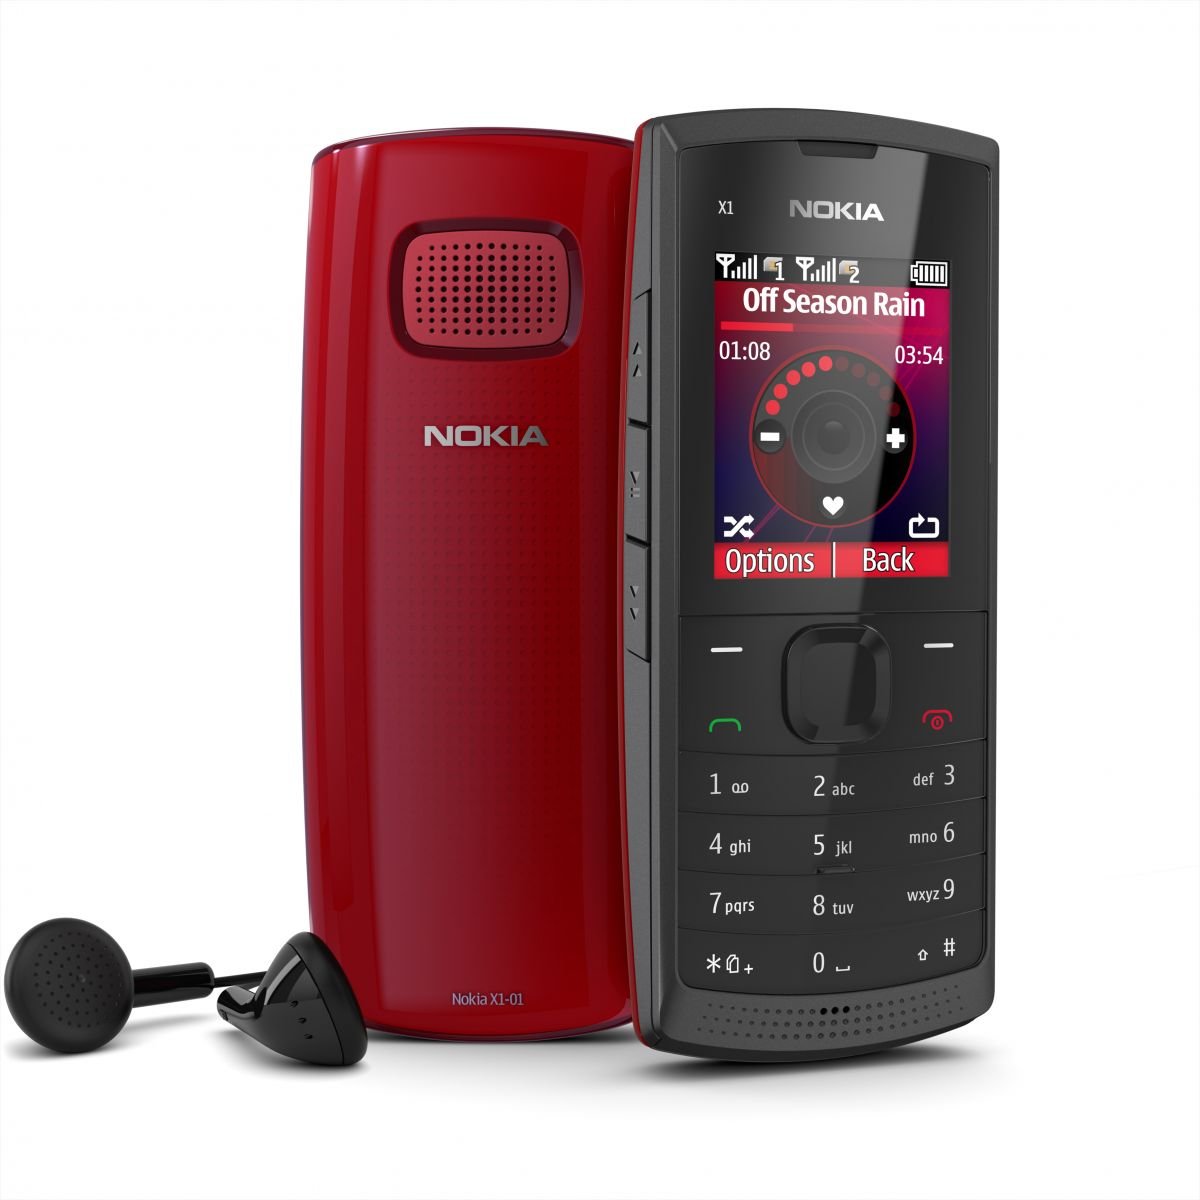 Nokia X1 01 2